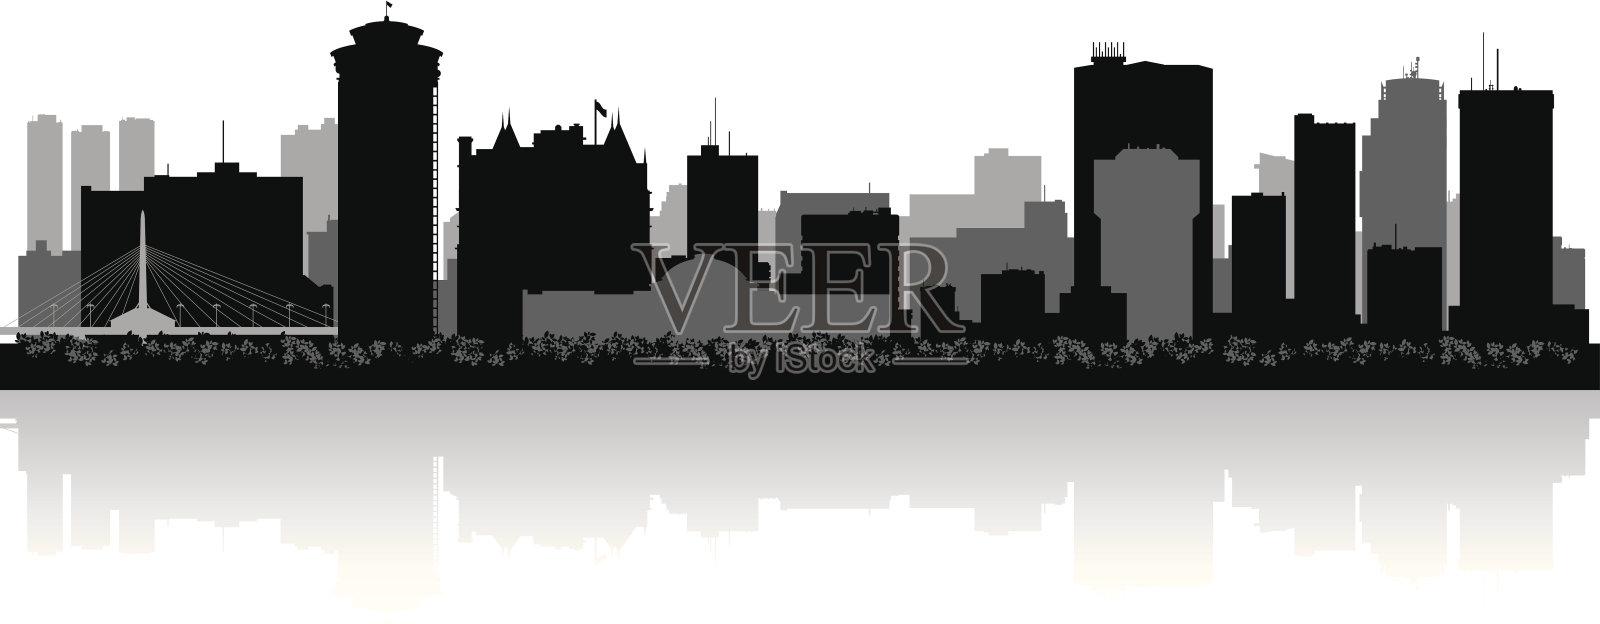 温尼伯加拿大城市天际线矢量剪影插画图片素材